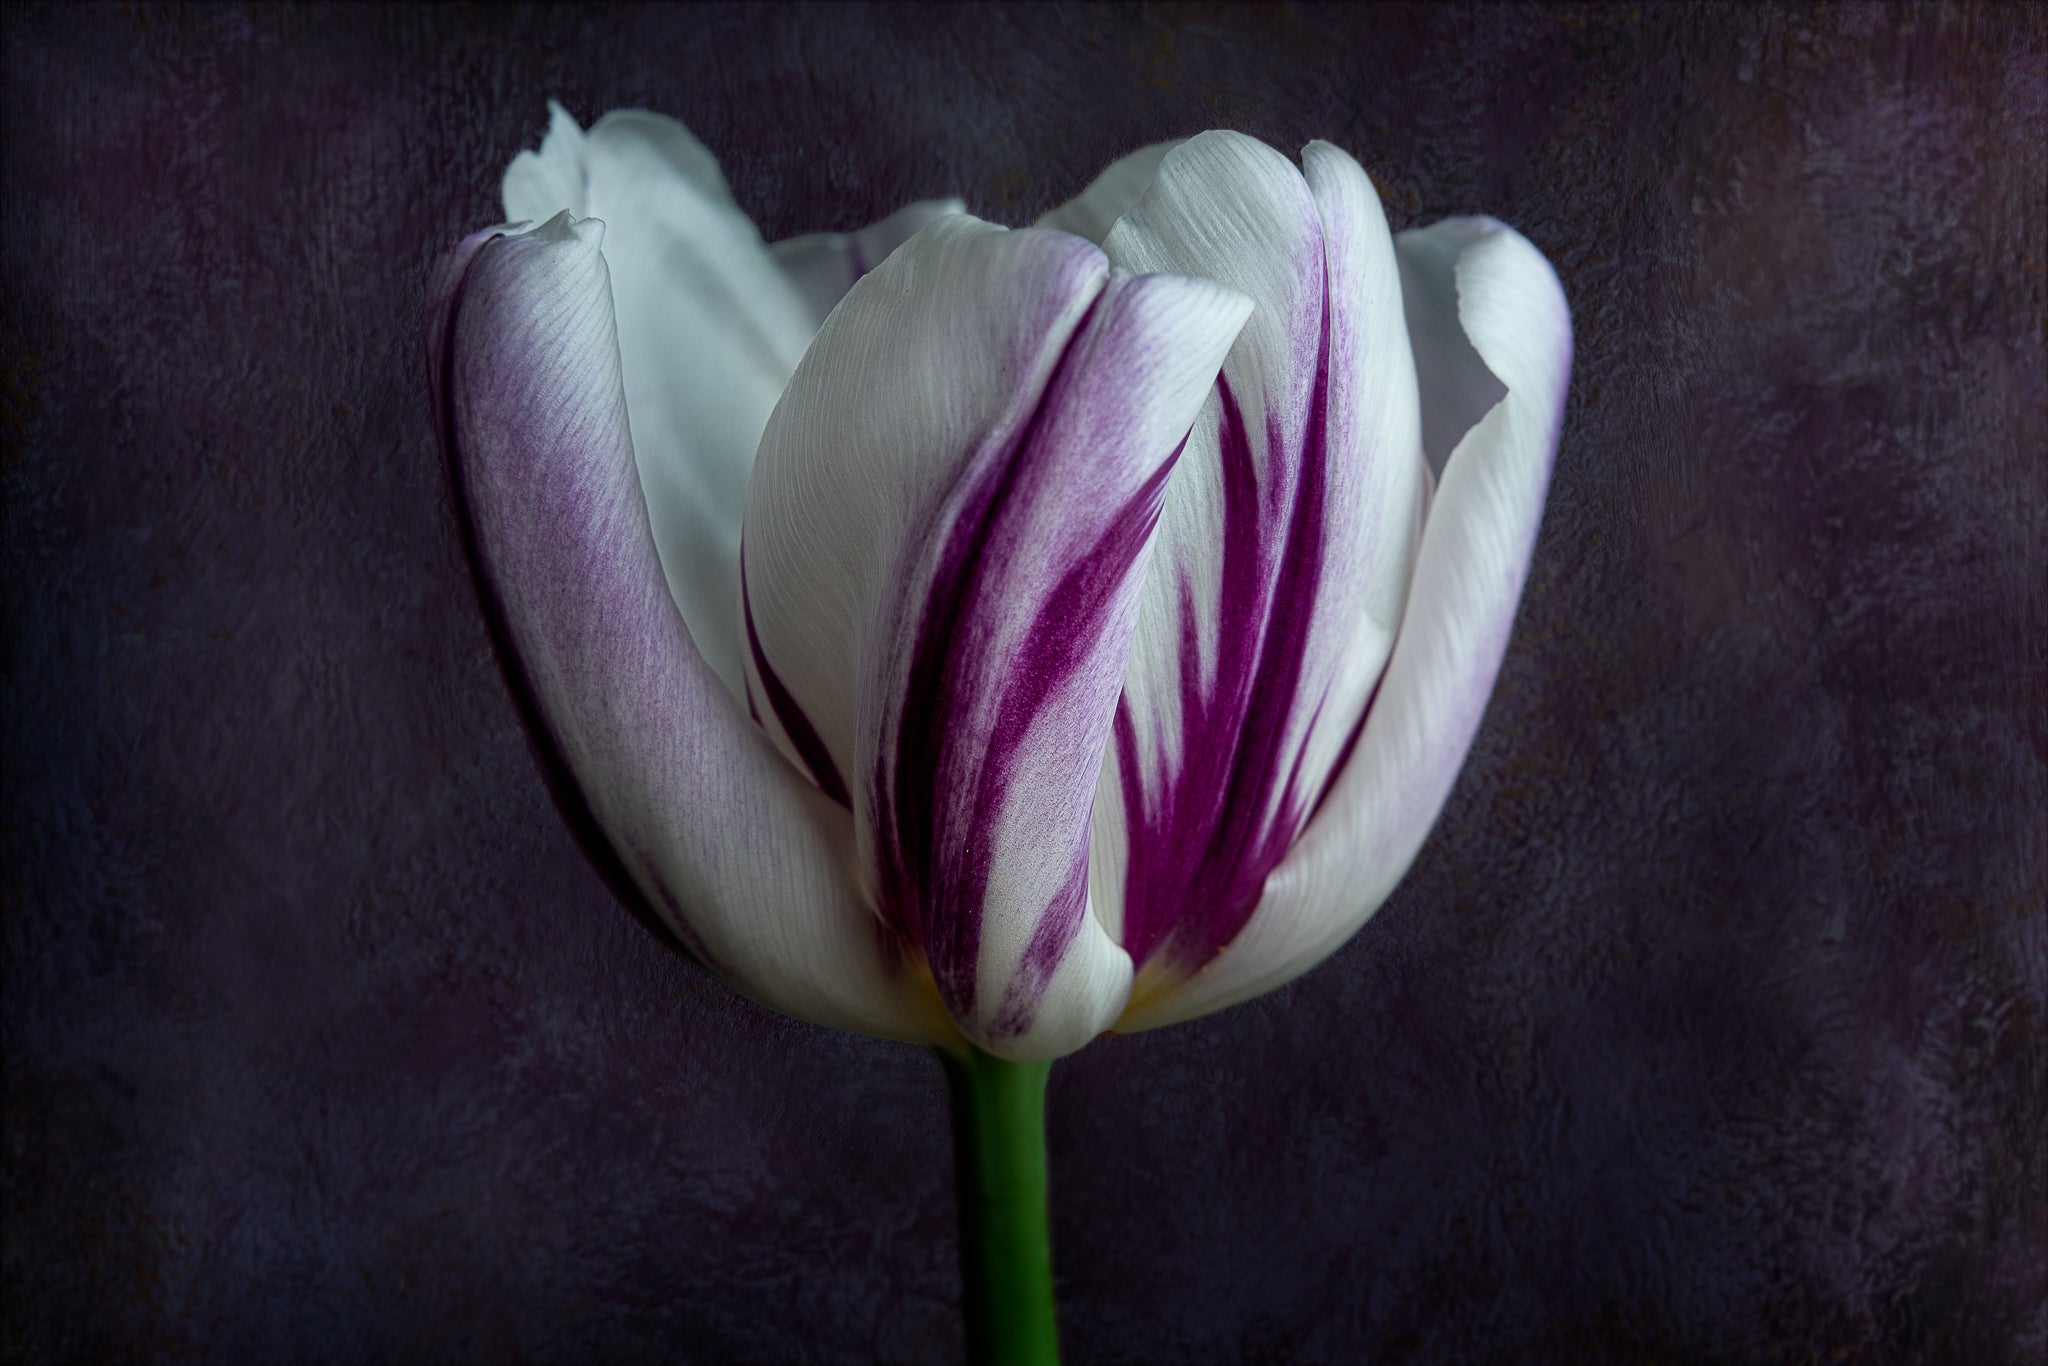 Fine art flower photograph of a single tulip titled "Audrey" by Cameron Dreaux of Dreaux Fine Art. 